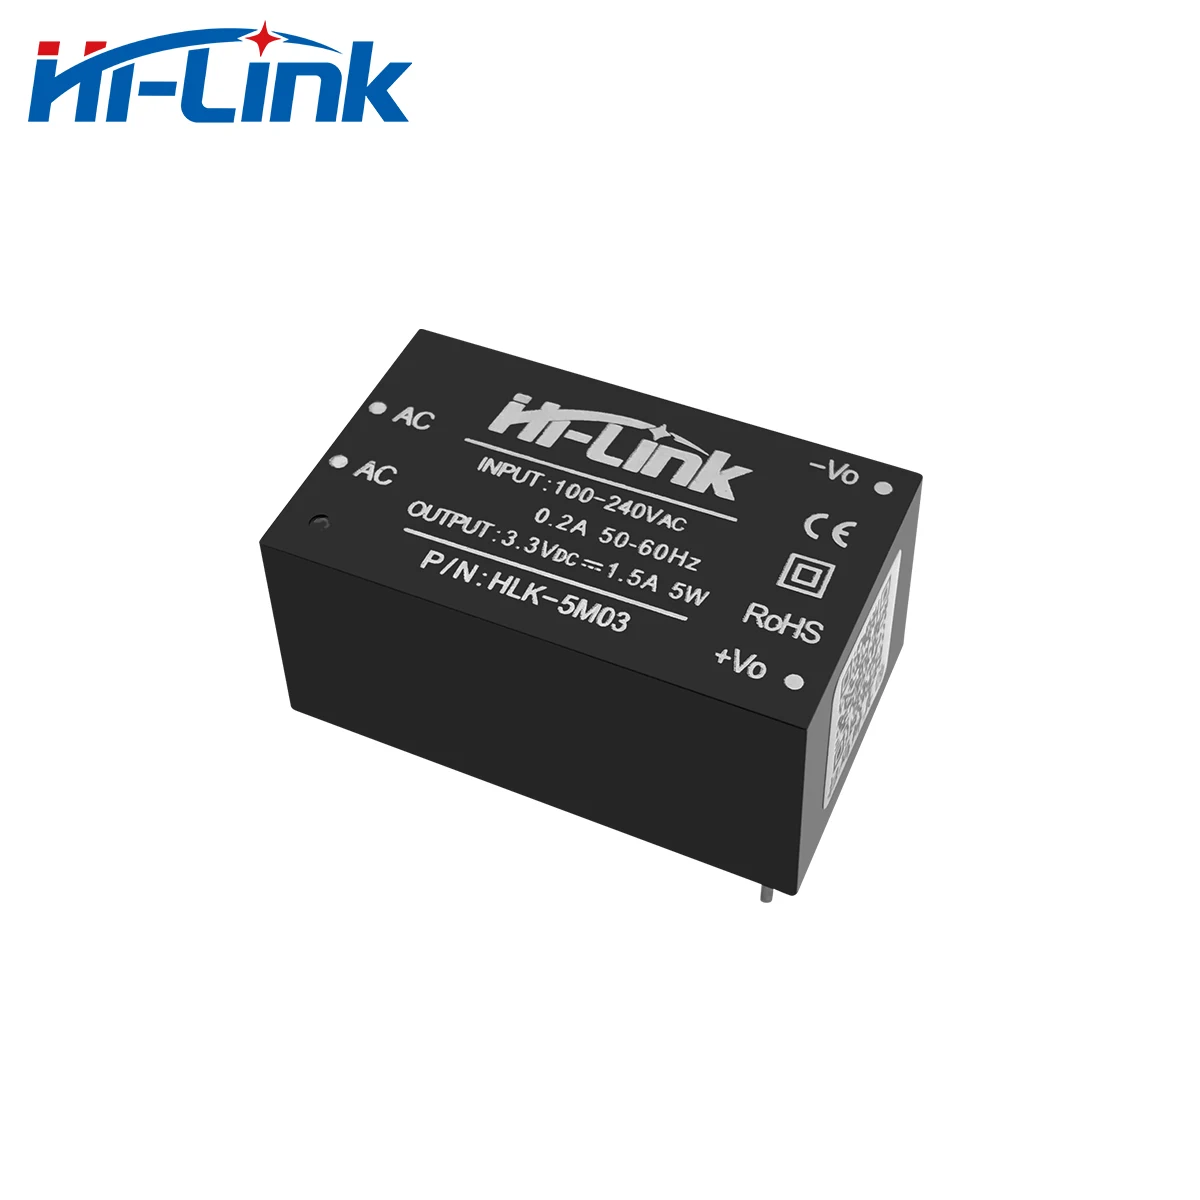 Hi-link originální 5W 3.3V 220V 110V střídavého stejnosměrný energie poskytnout modul zdroj HLK-5M03